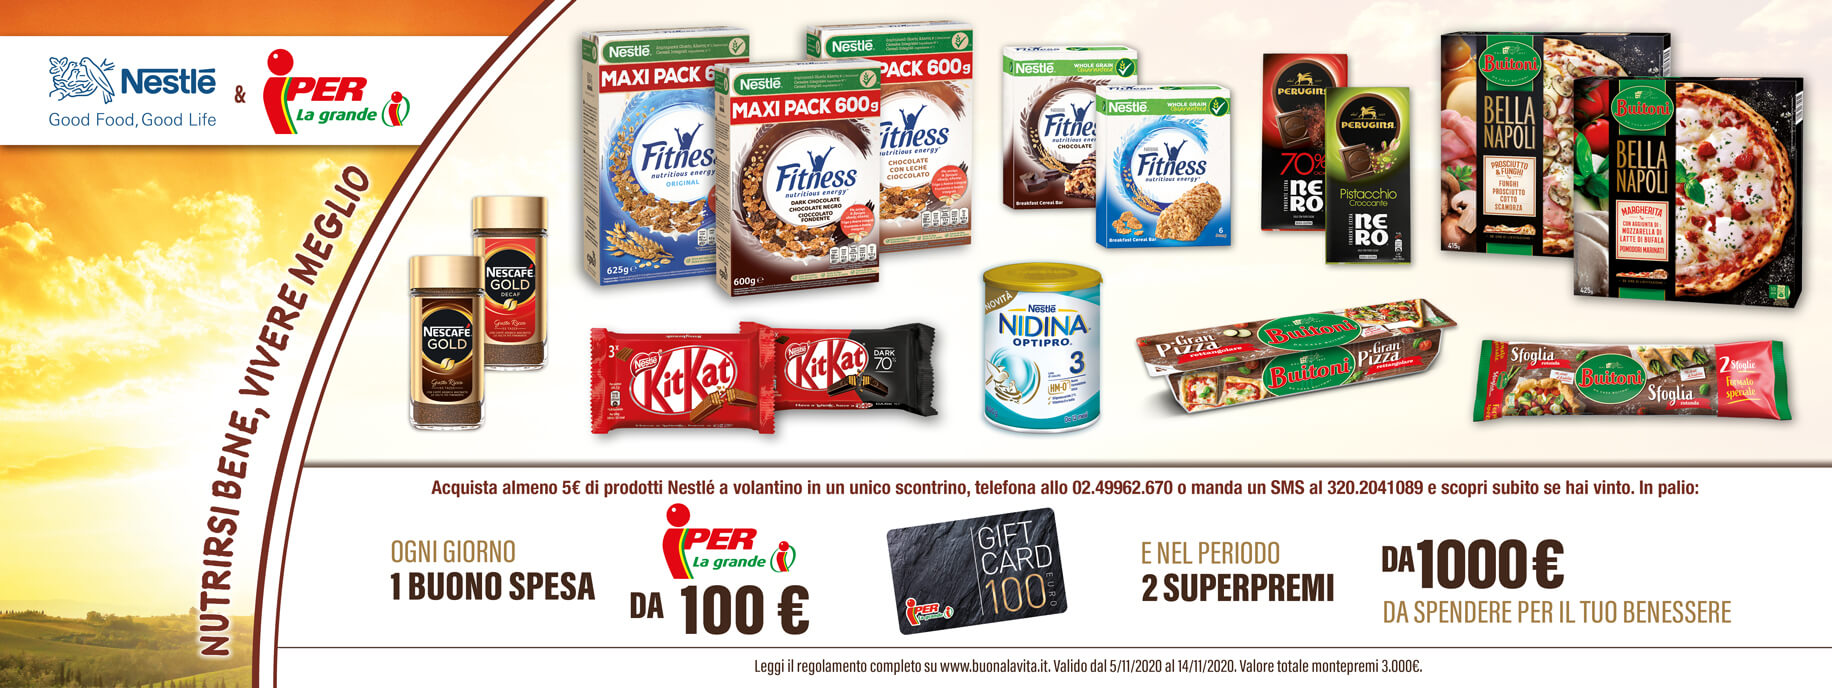 Informazioni concorso Nestlé Iper confezioni per partecipare e gift card da 100 €